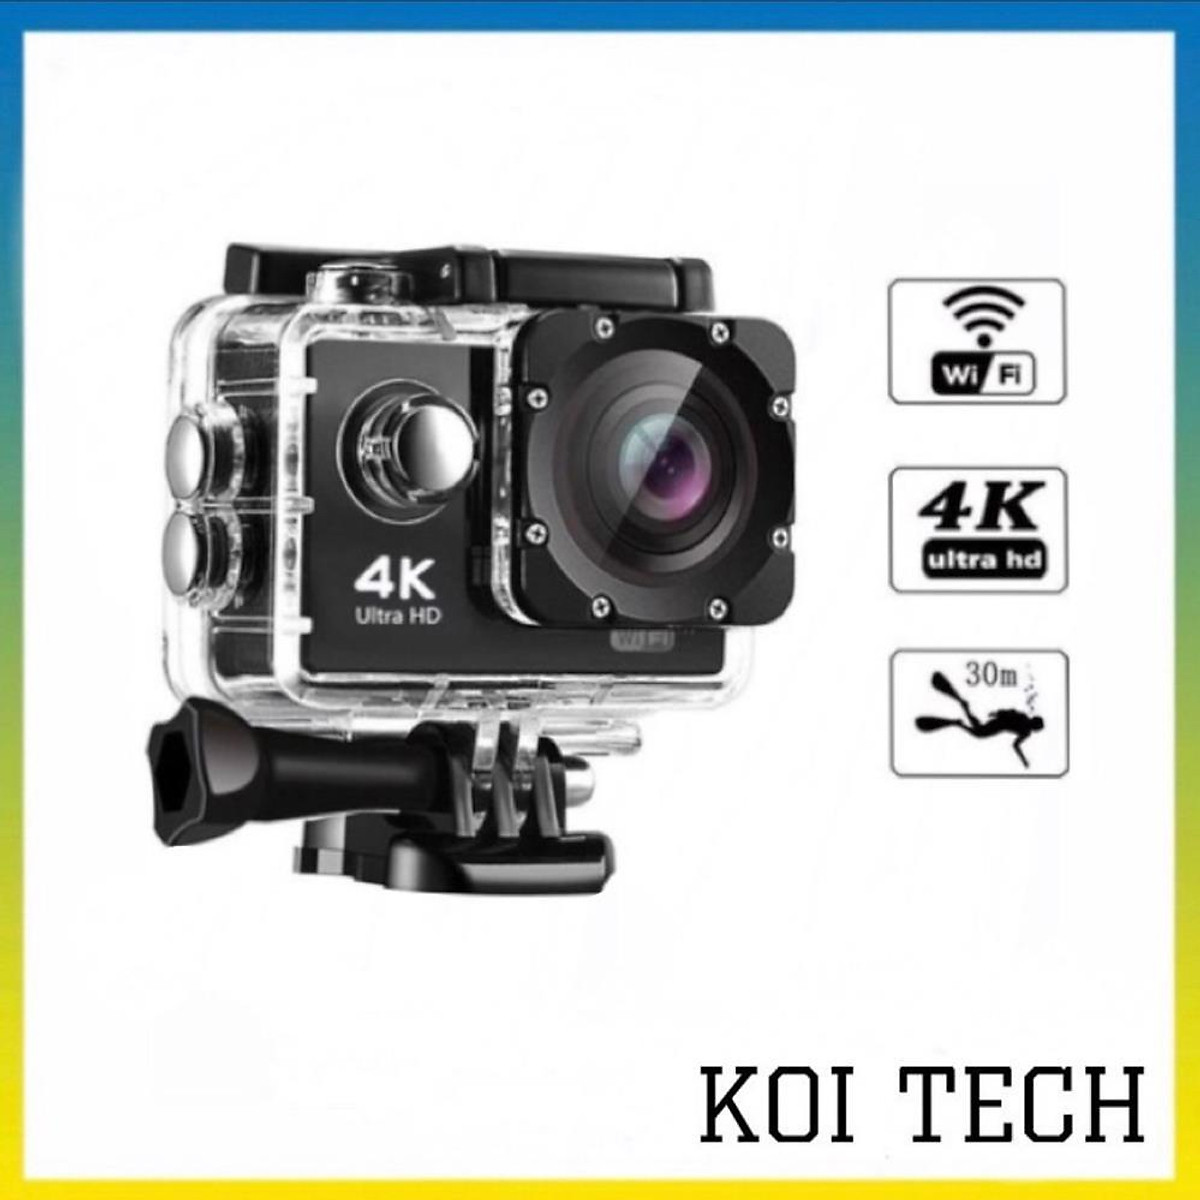 Máy ảnh 4K Ultra HD là công nghệ tiên tiến nhất hiện nay giúp bạn quay video và chụp ảnh chất lượng tuyệt vời. Hình ảnh sống động, sắc nét sẽ mang lại cho bạn trải nghiệm xem ảnh và video cực kỳ thú vị và độc đáo.